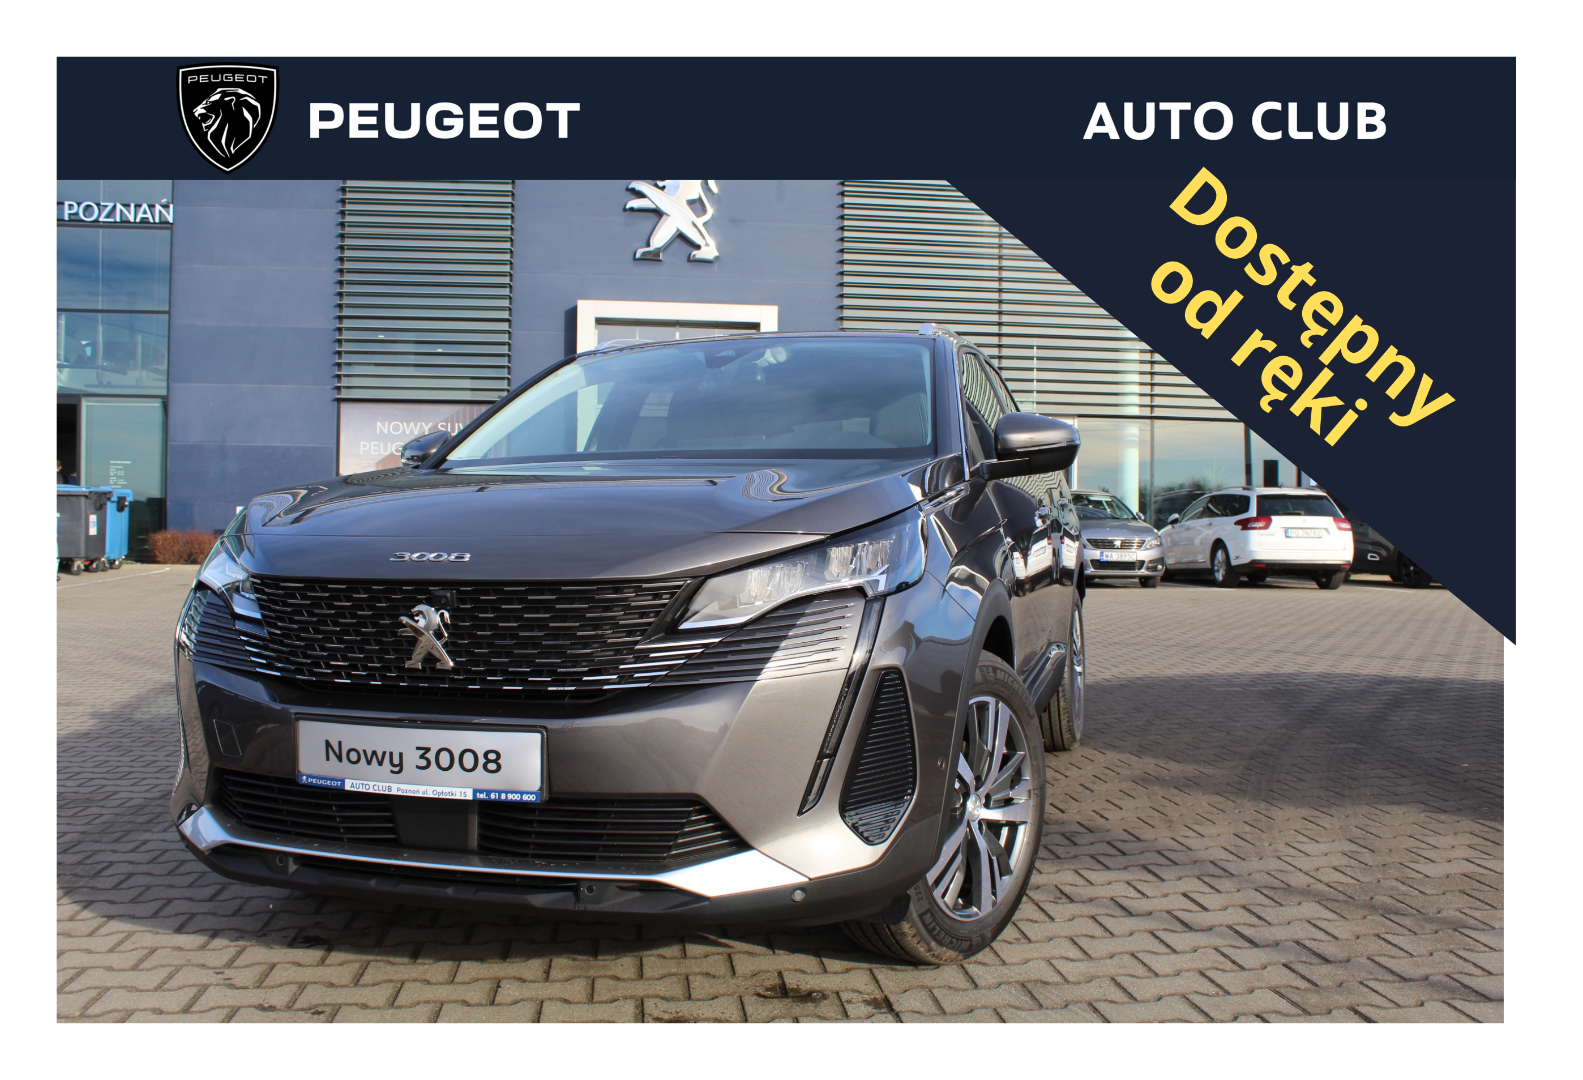 Peugeot 3008 - Osobowe | SUV - Ogłoszenia motoryzacyjne, samochody nowe i  używane :: Grupa Bemo Motors..